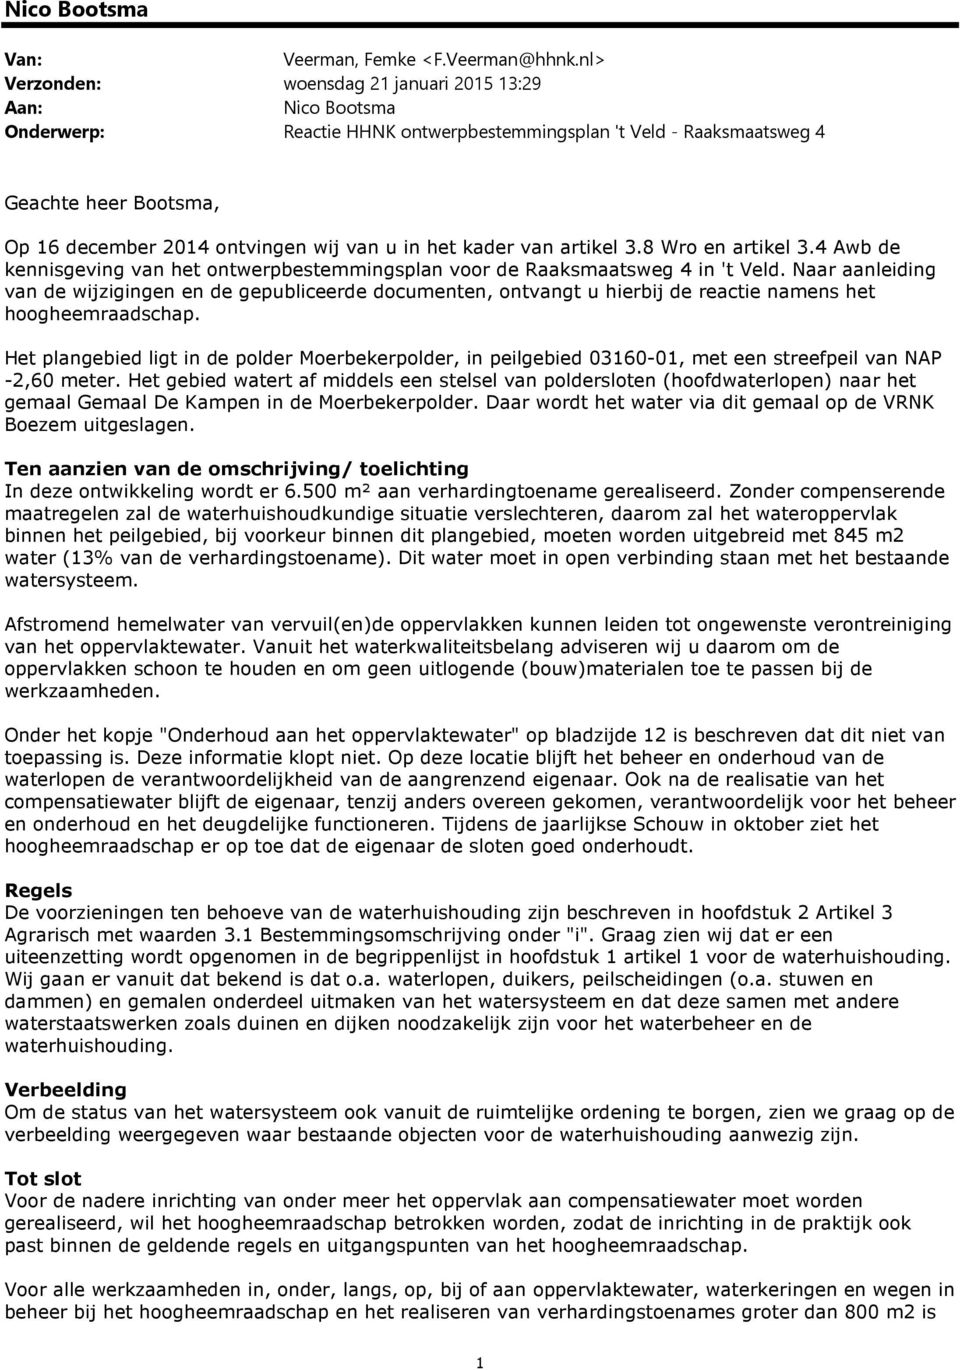 in het kader van artikel 3.8 Wro en artikel 3.4 Awb de kennisgeving van het ontwerpbestemmingsplan voor de Raaksmaatsweg 4 in 't Veld.